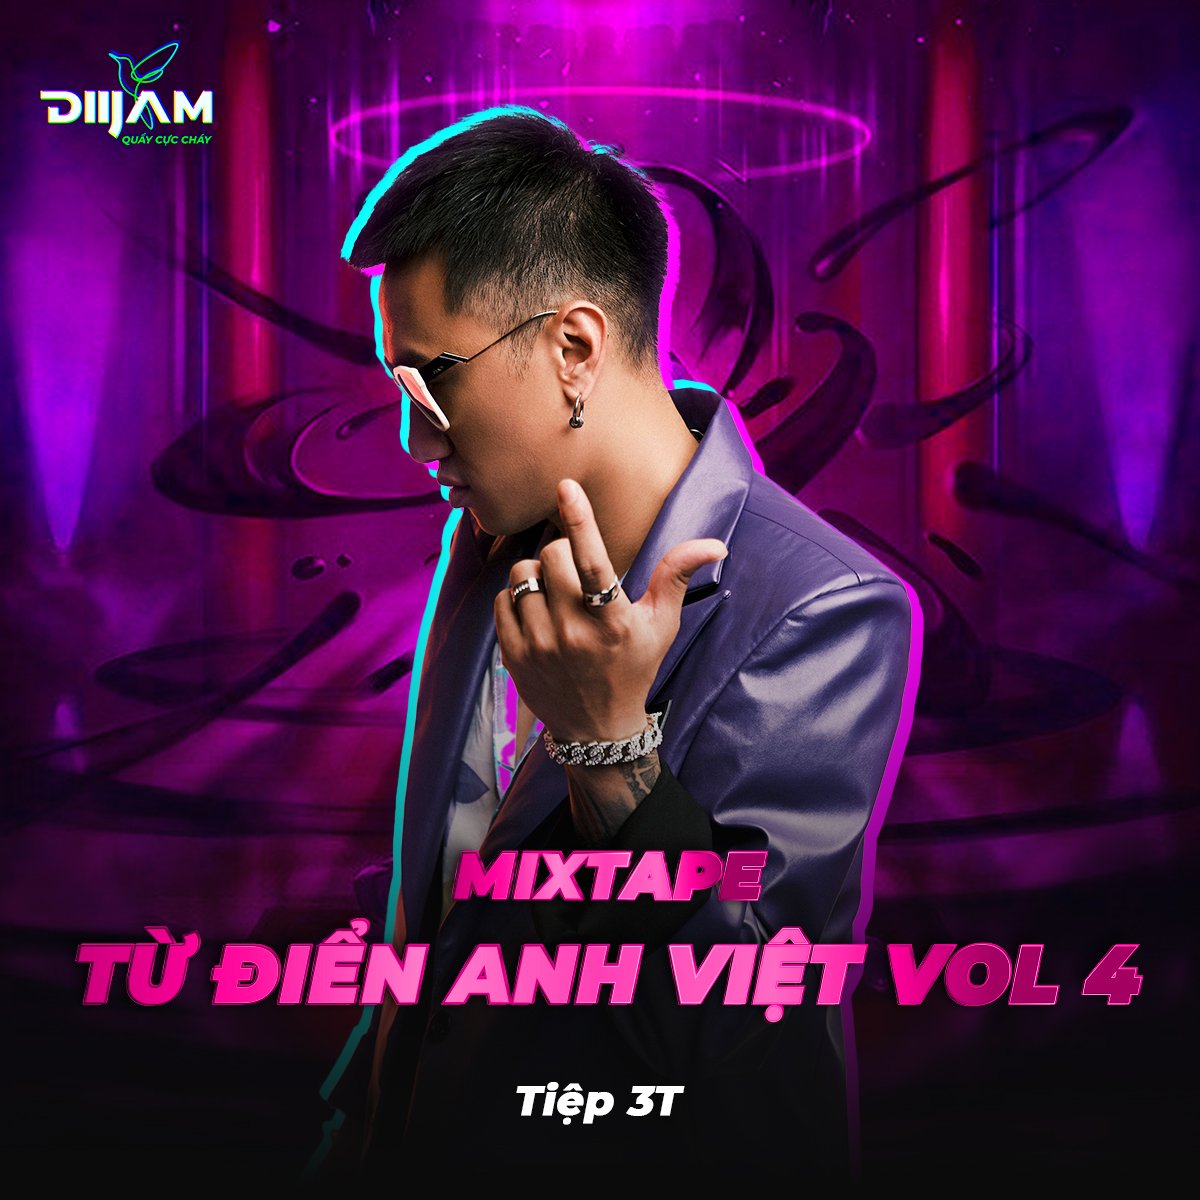 Preuzimanje datoteka Mixtape - Tu Dien Anh Viet Vol4 - Mixed By DJ Tiep 3T